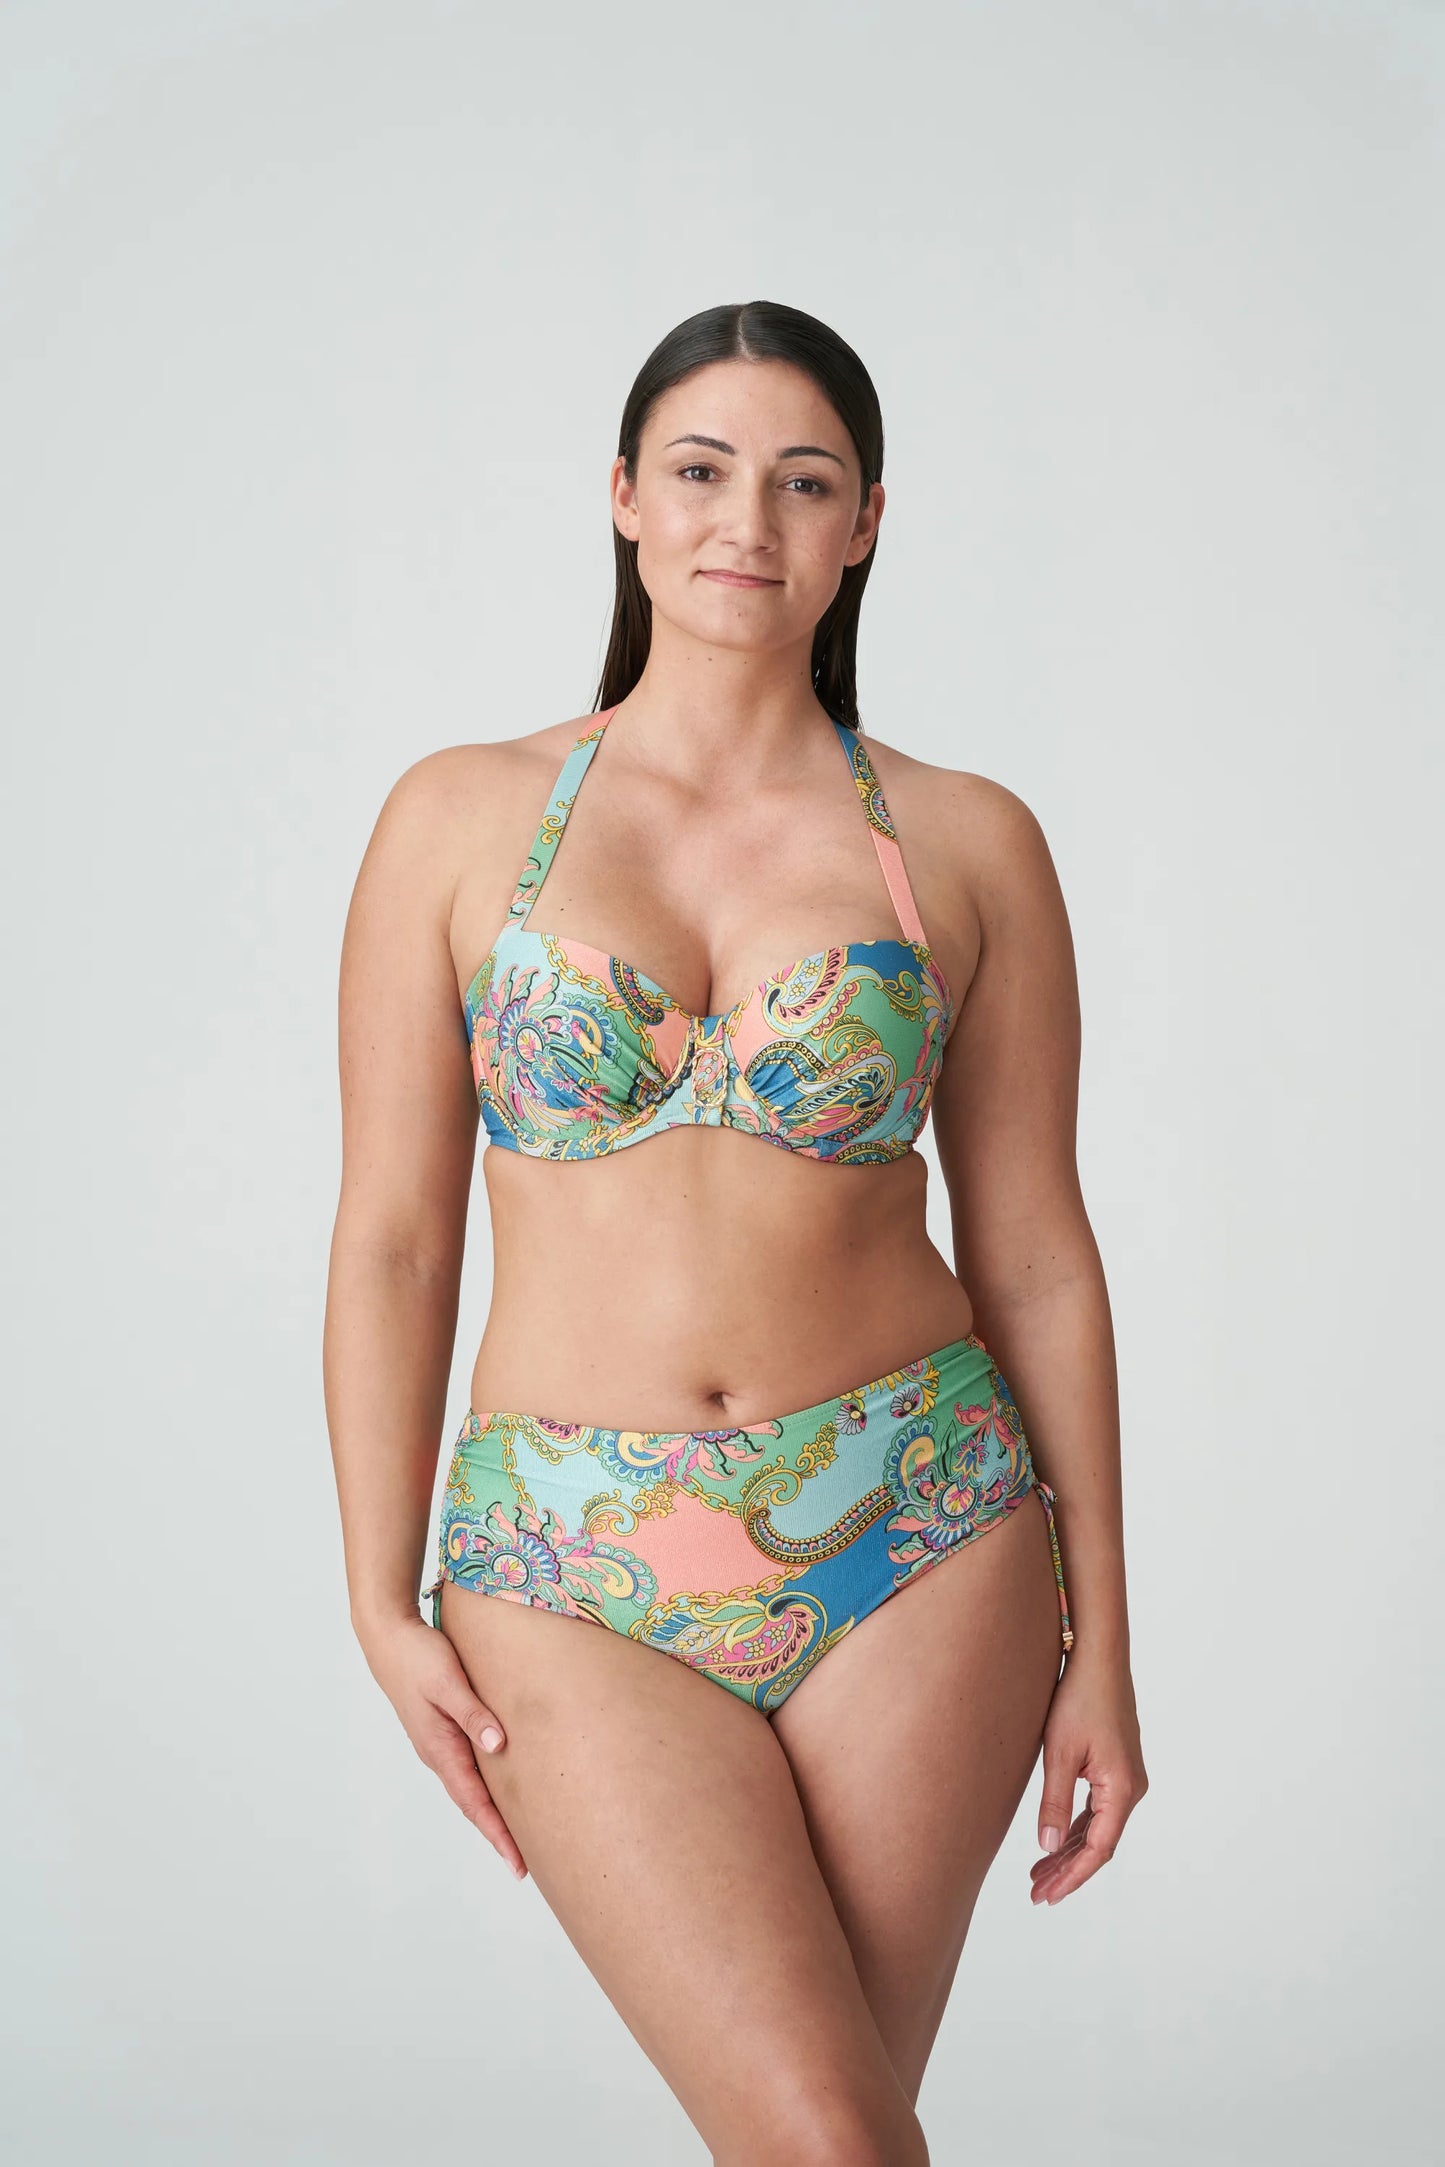 Prima Donna SWIM Voorgevormde Balconette bikini met tailleslip - Celaya 4011216 / 4011252 - Ilatian Chic